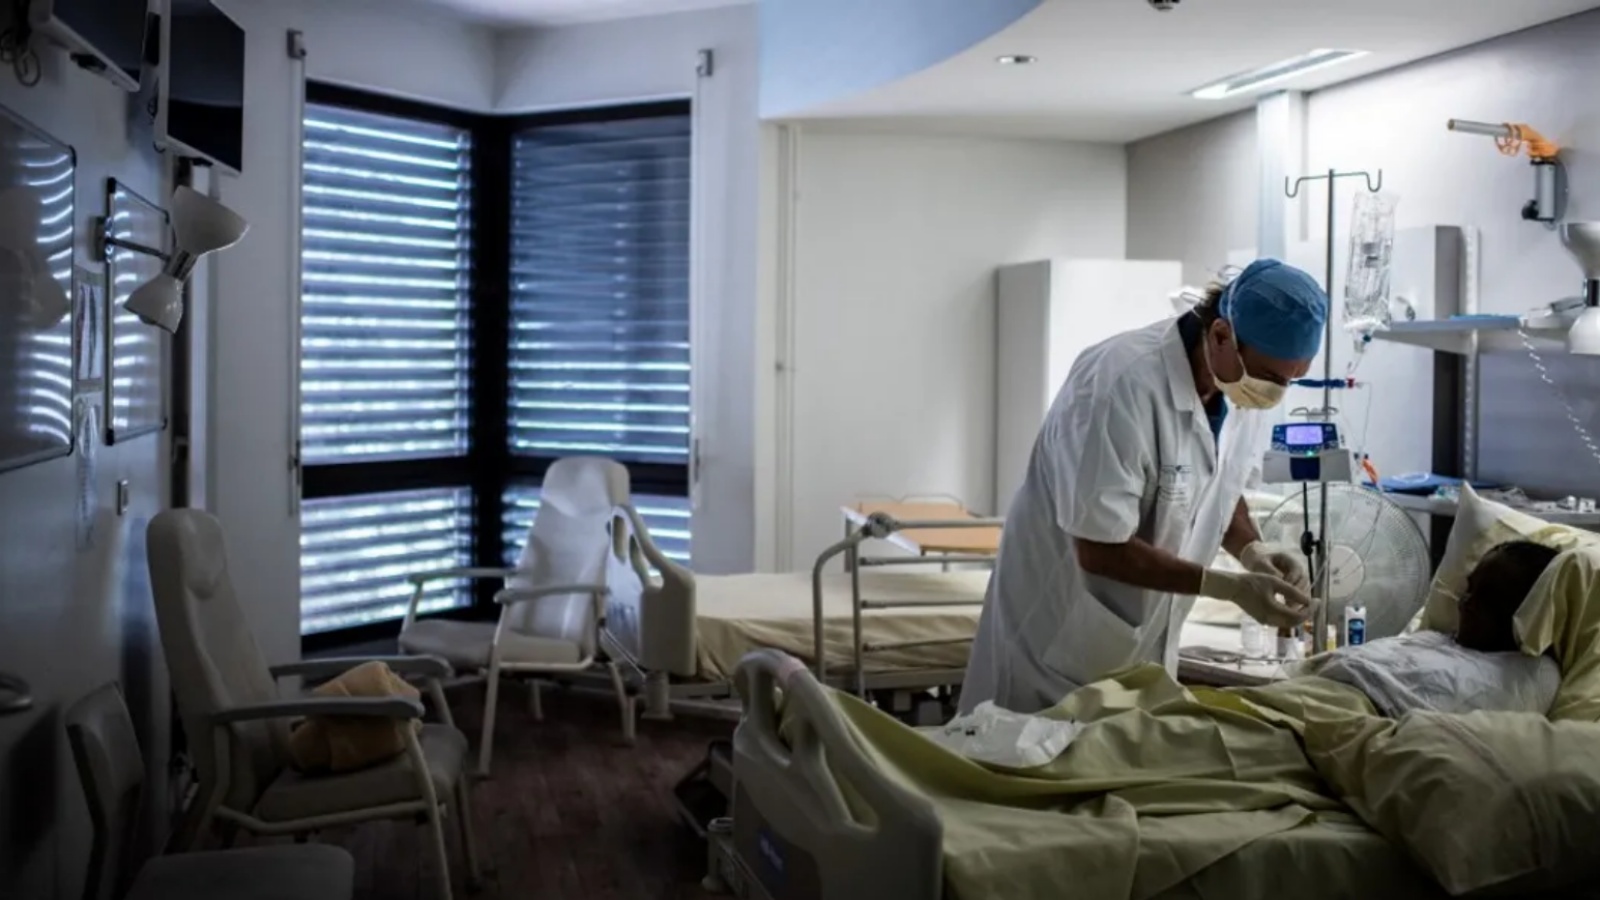 طبيب يعاين مريضاً في غرفة في أحد المستشفيات (توضيحية)